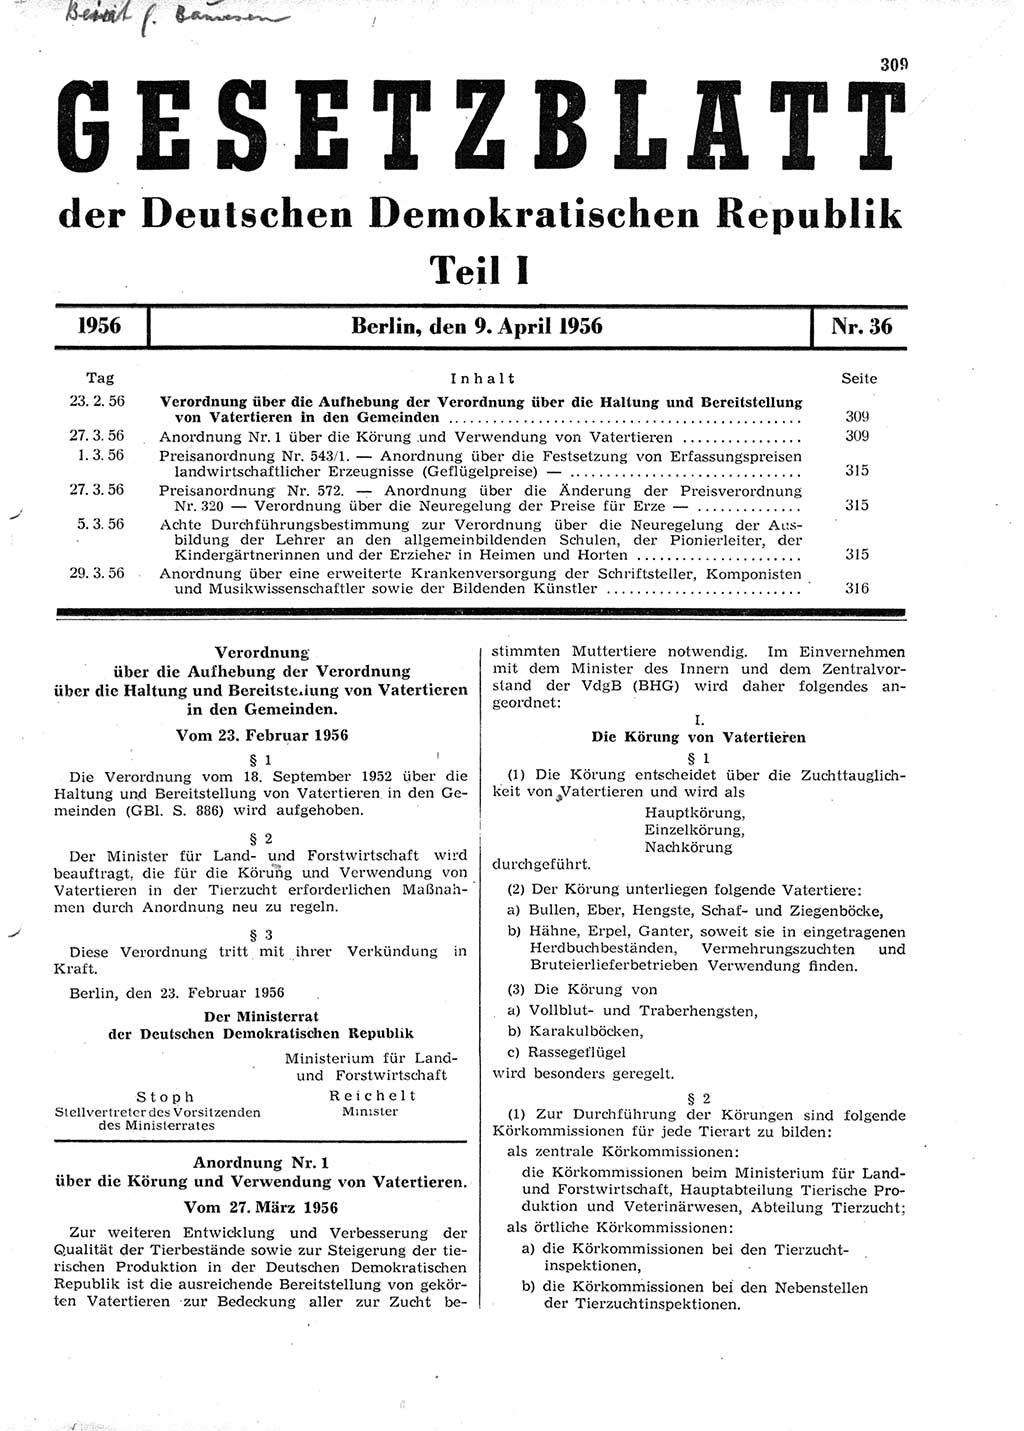 Gesetzblatt (GBl.) der Deutschen Demokratischen Republik (DDR) Teil Ⅰ 1956, Seite 309 (GBl. DDR Ⅰ 1956, S. 309)